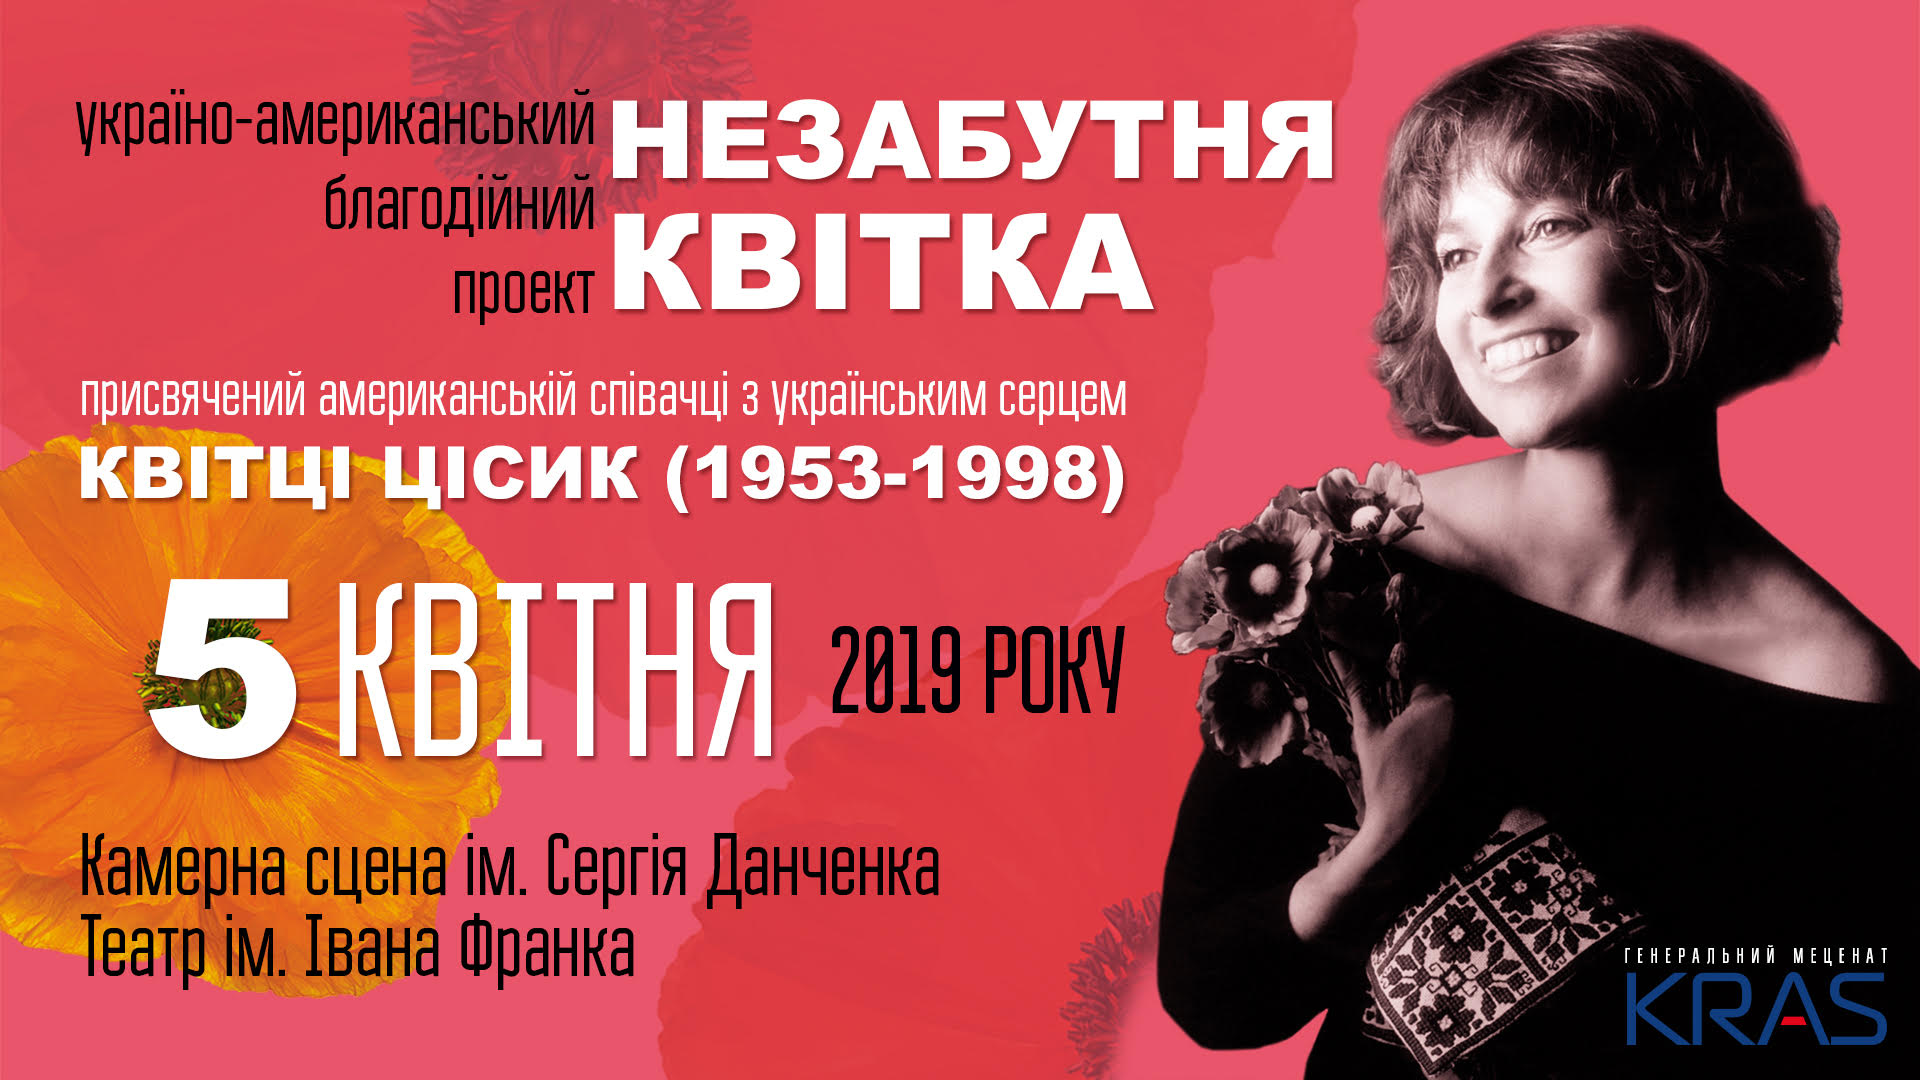 В Киеве пройдет благотворительный вечер памяти Квитки Цисык